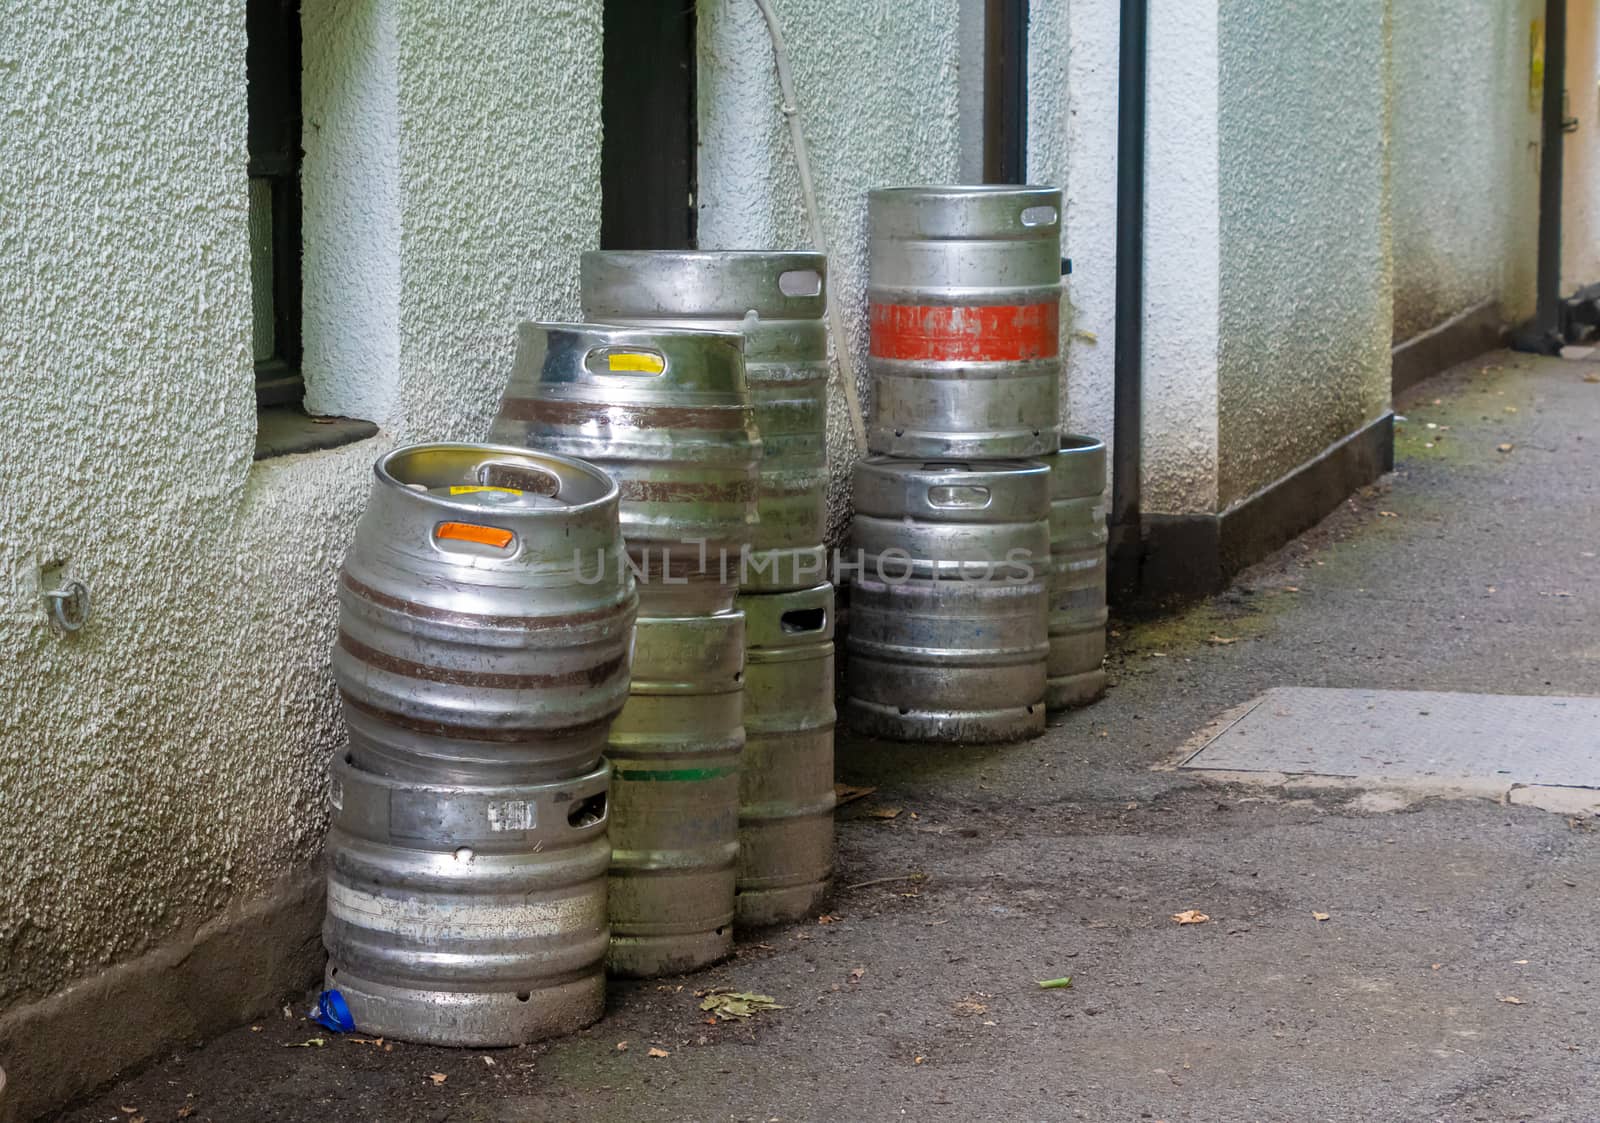 Beer keg barrels stacked outside a building